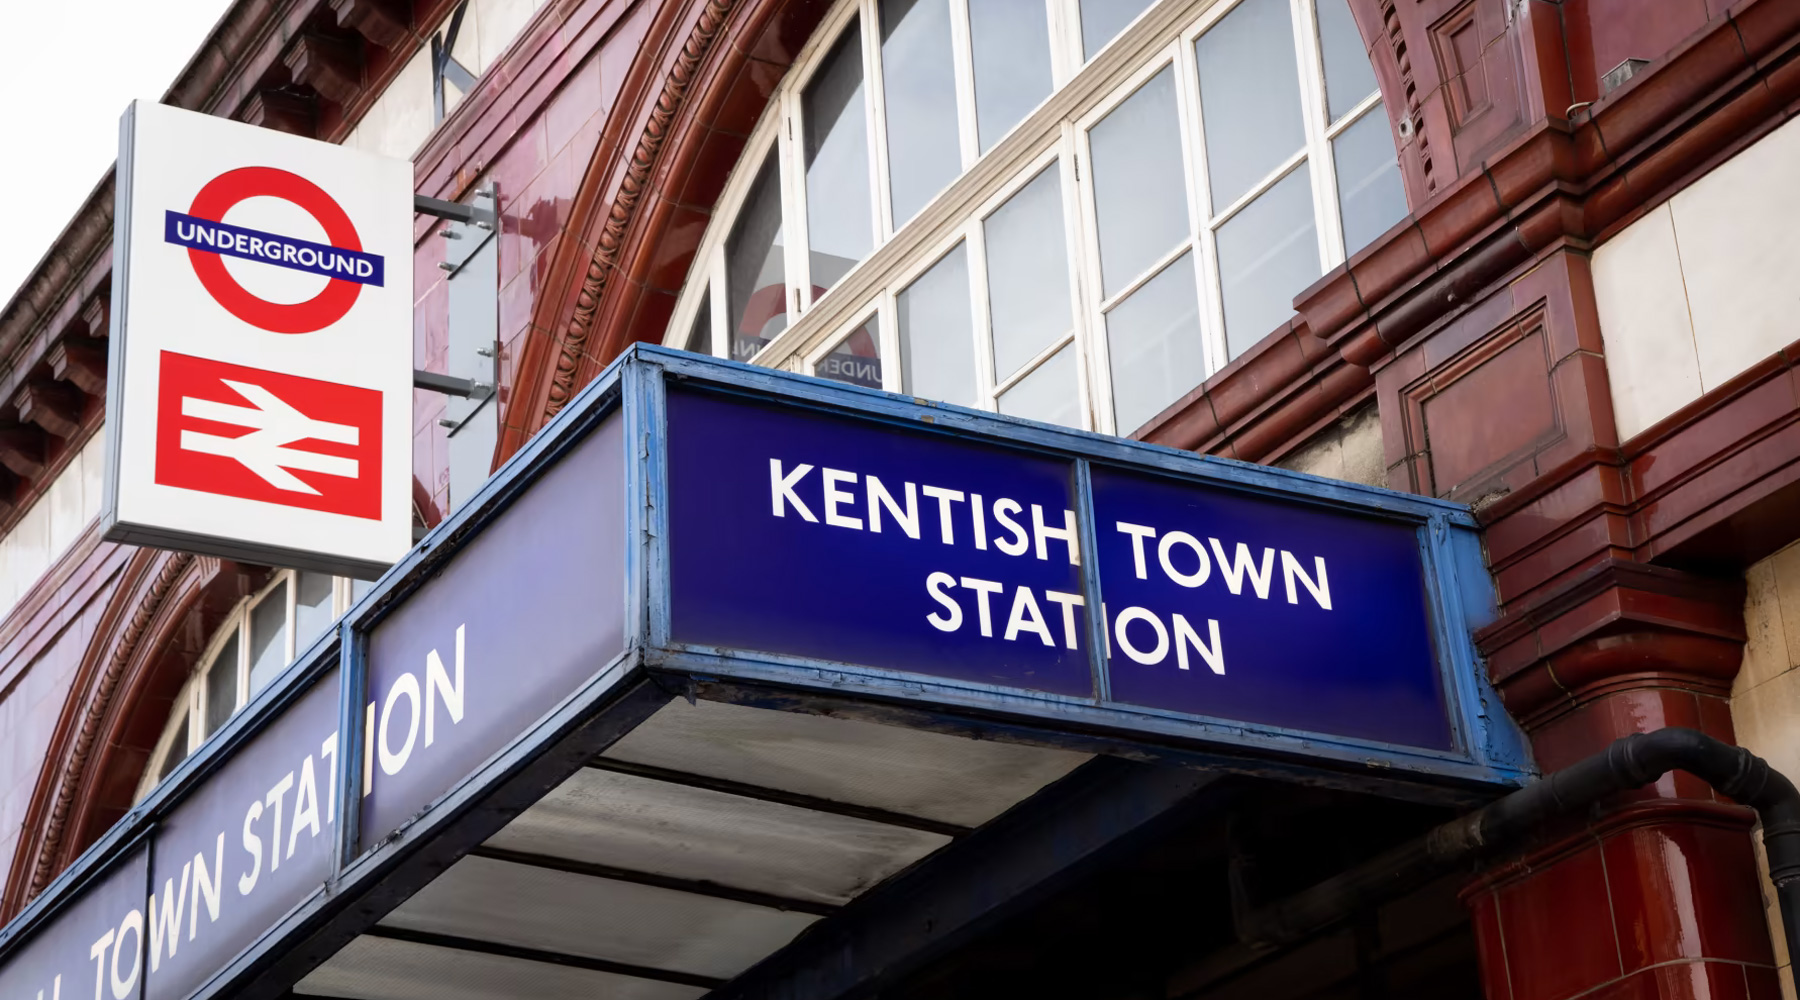 Die Londoner U-Bahn schließt die U-Bahn-Station Kentish Town für ein Jahr